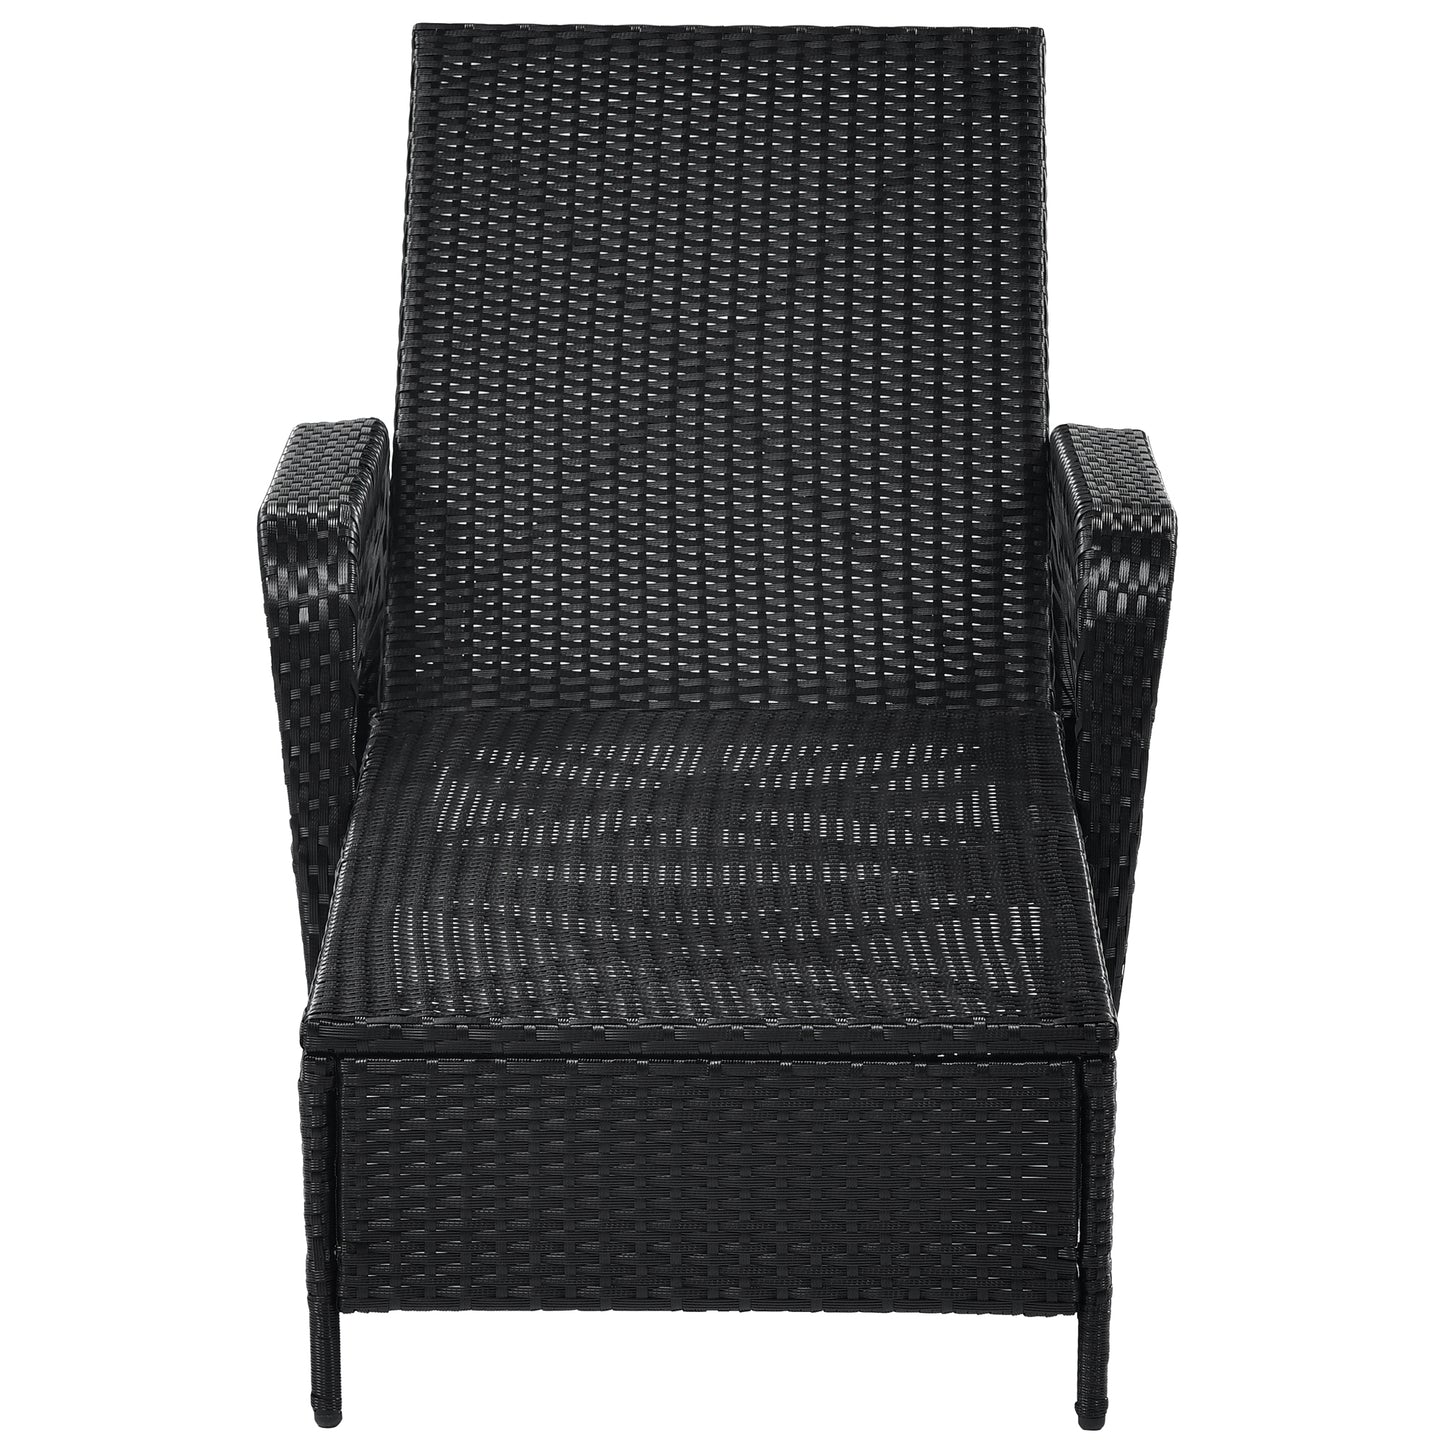 GO Outdoor patio pool PE rattan wicker chair wicker sun lounger, Adjustable backrest, green cushion, Black wicker (2 sets)